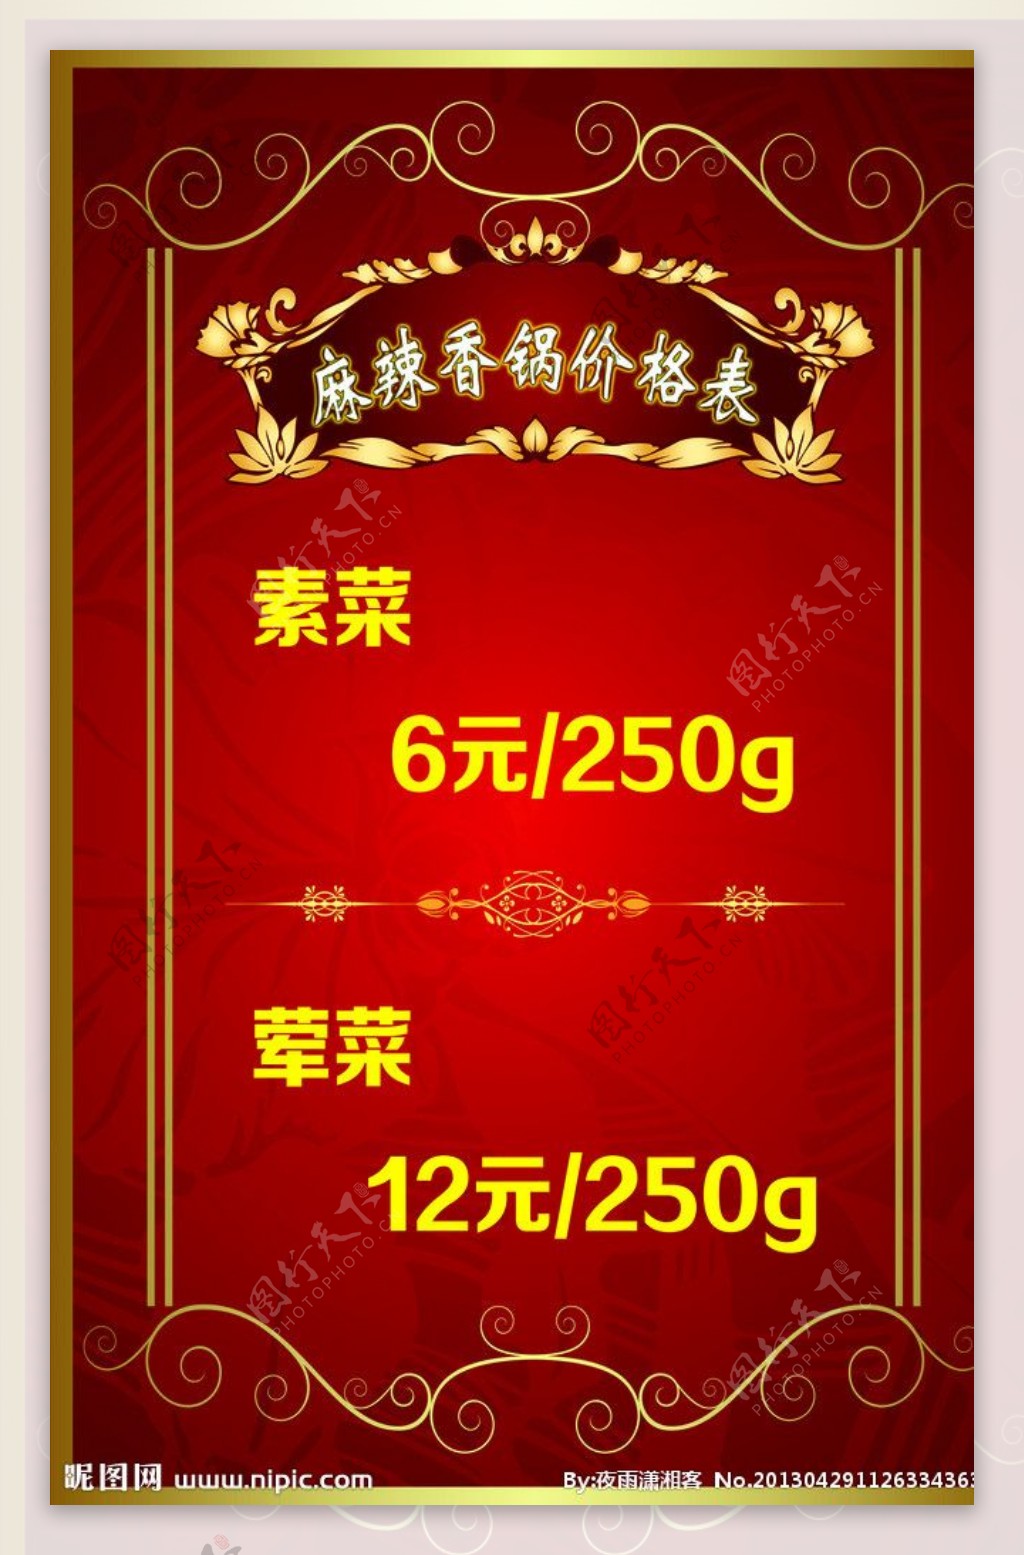 麻辣香锅价格表图片